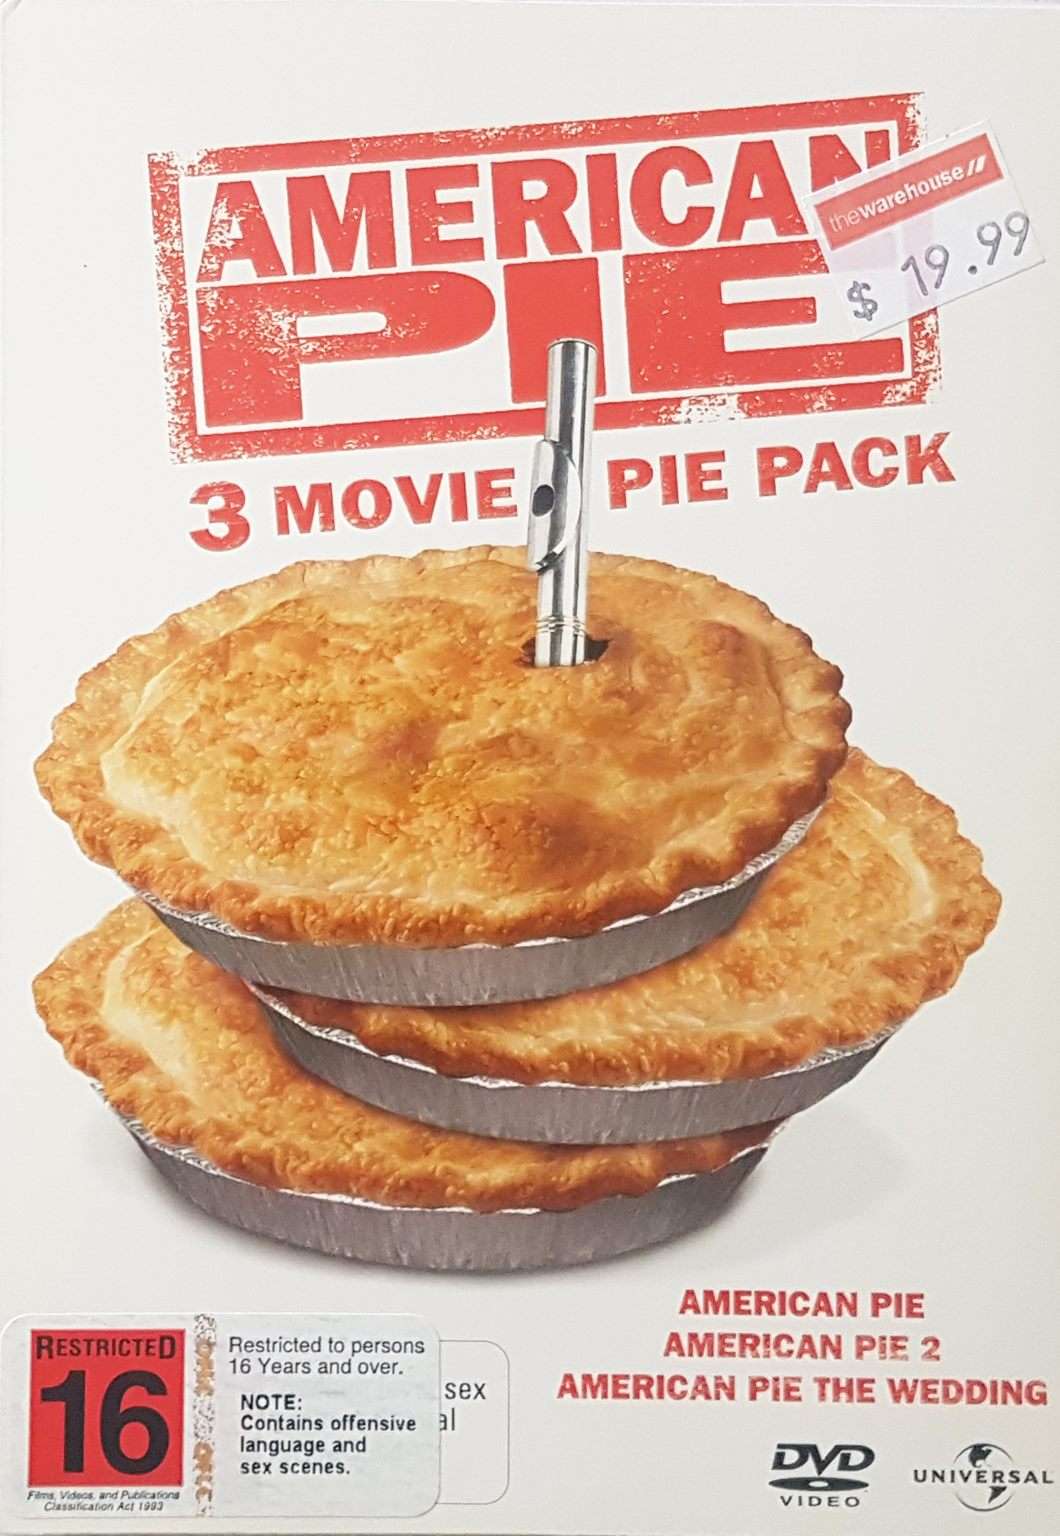 American Pie 3 Movie Pack American Pie 1 & 2 & The Wedding